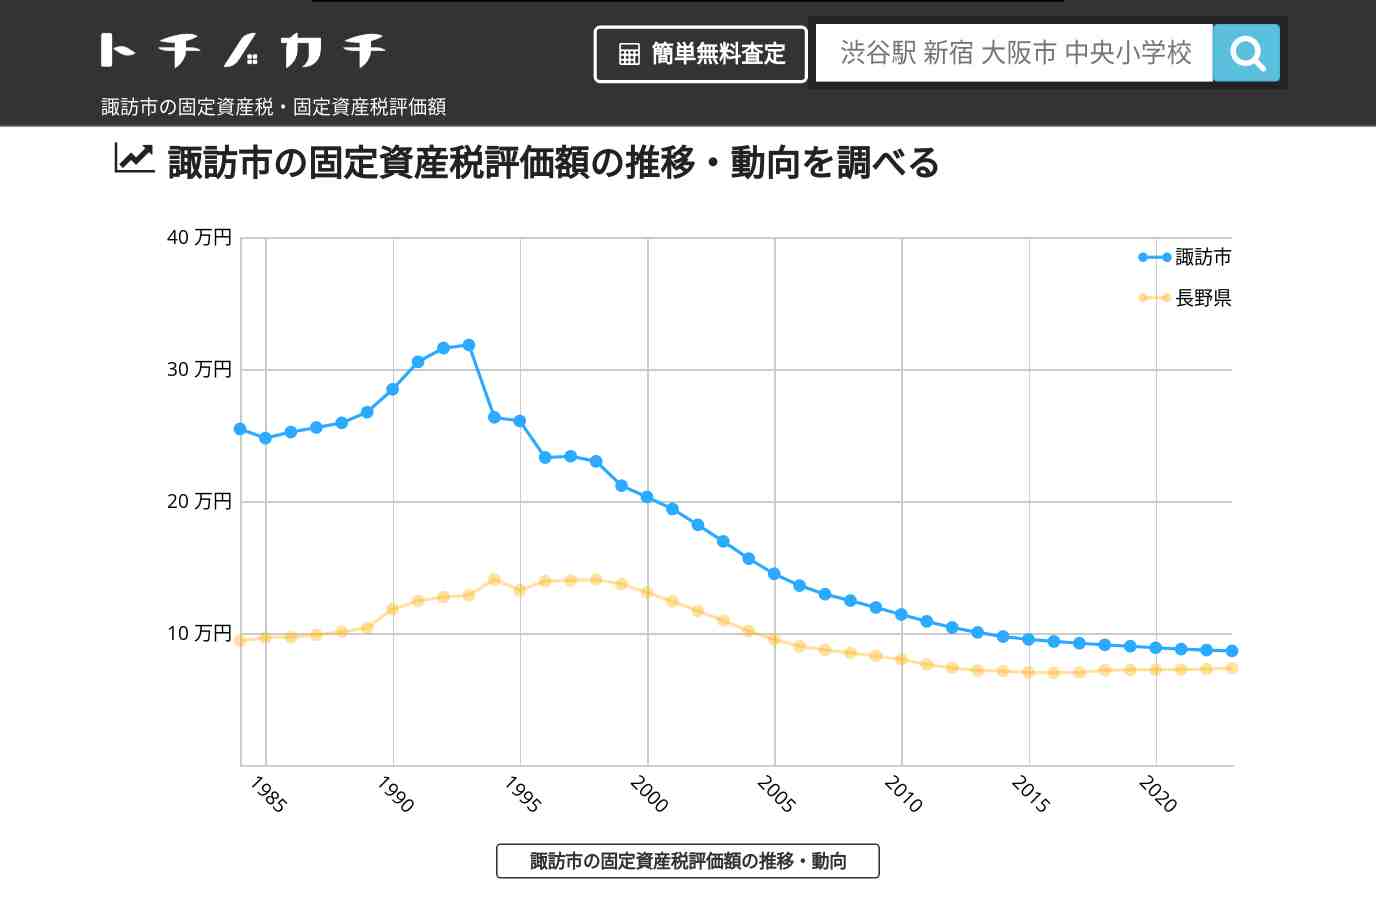 中洲小学校(長野県 諏訪市)周辺の固定資産税・固定資産税評価額 | トチノカチ